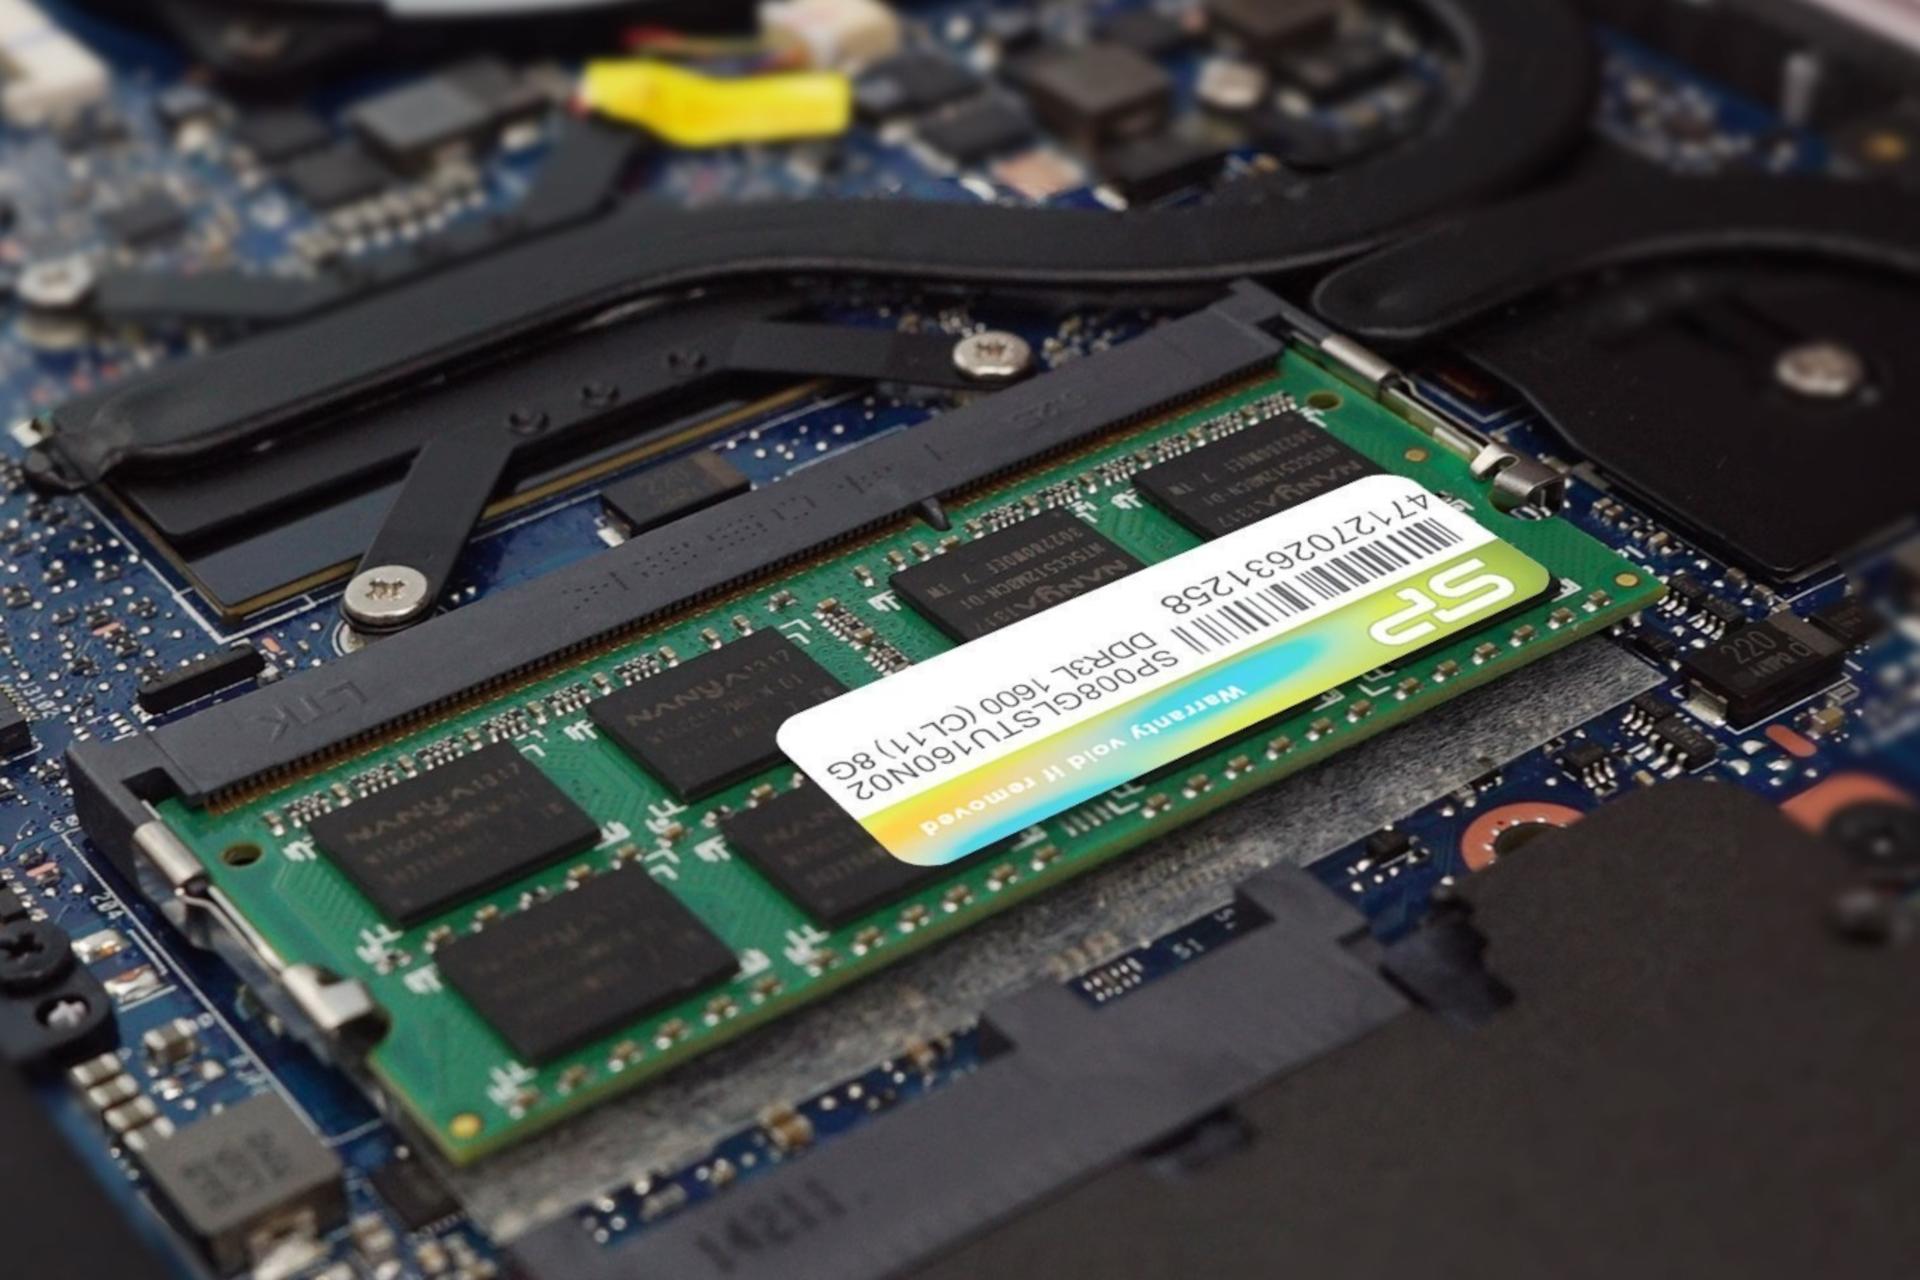 رم سیلیکون پاور SP008GLSTU160N02 ظرفیت 8 گیگابایت از نوع DDR3L-1600 داخل لپ تاپ